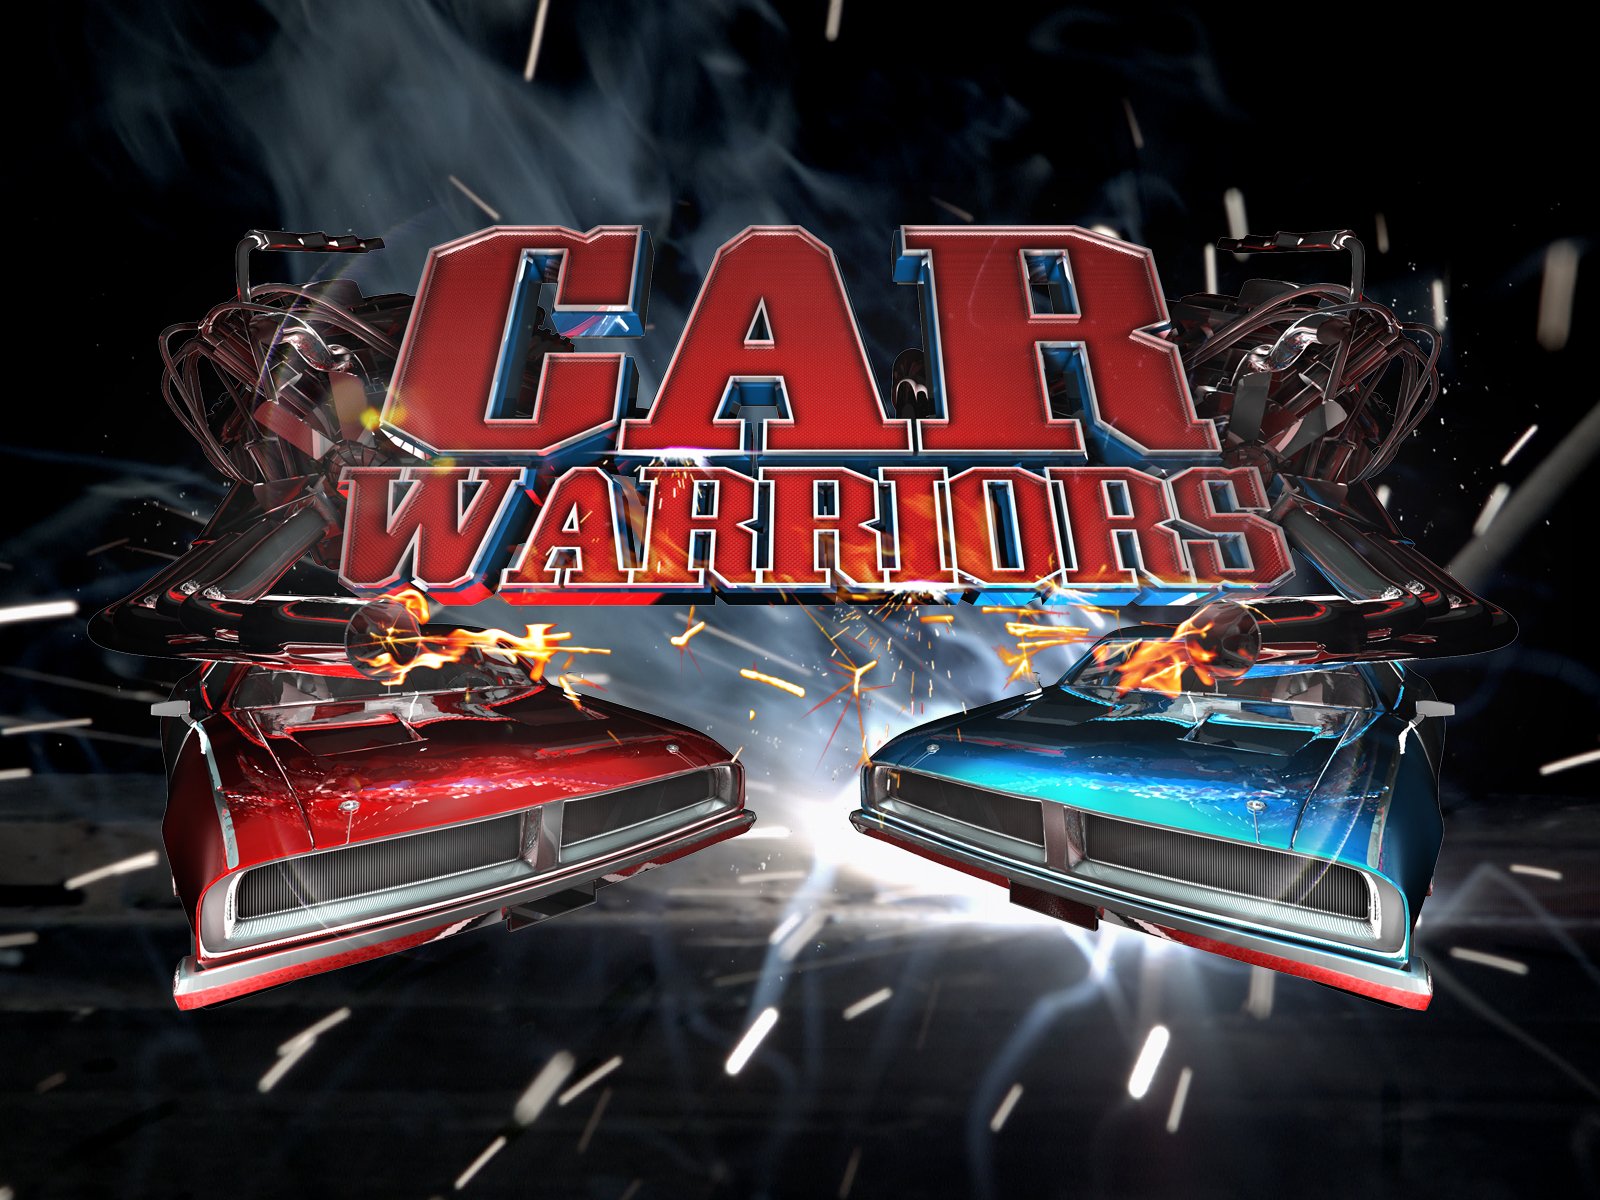 Caratula de Car Warriors (Guerreros del motor) 